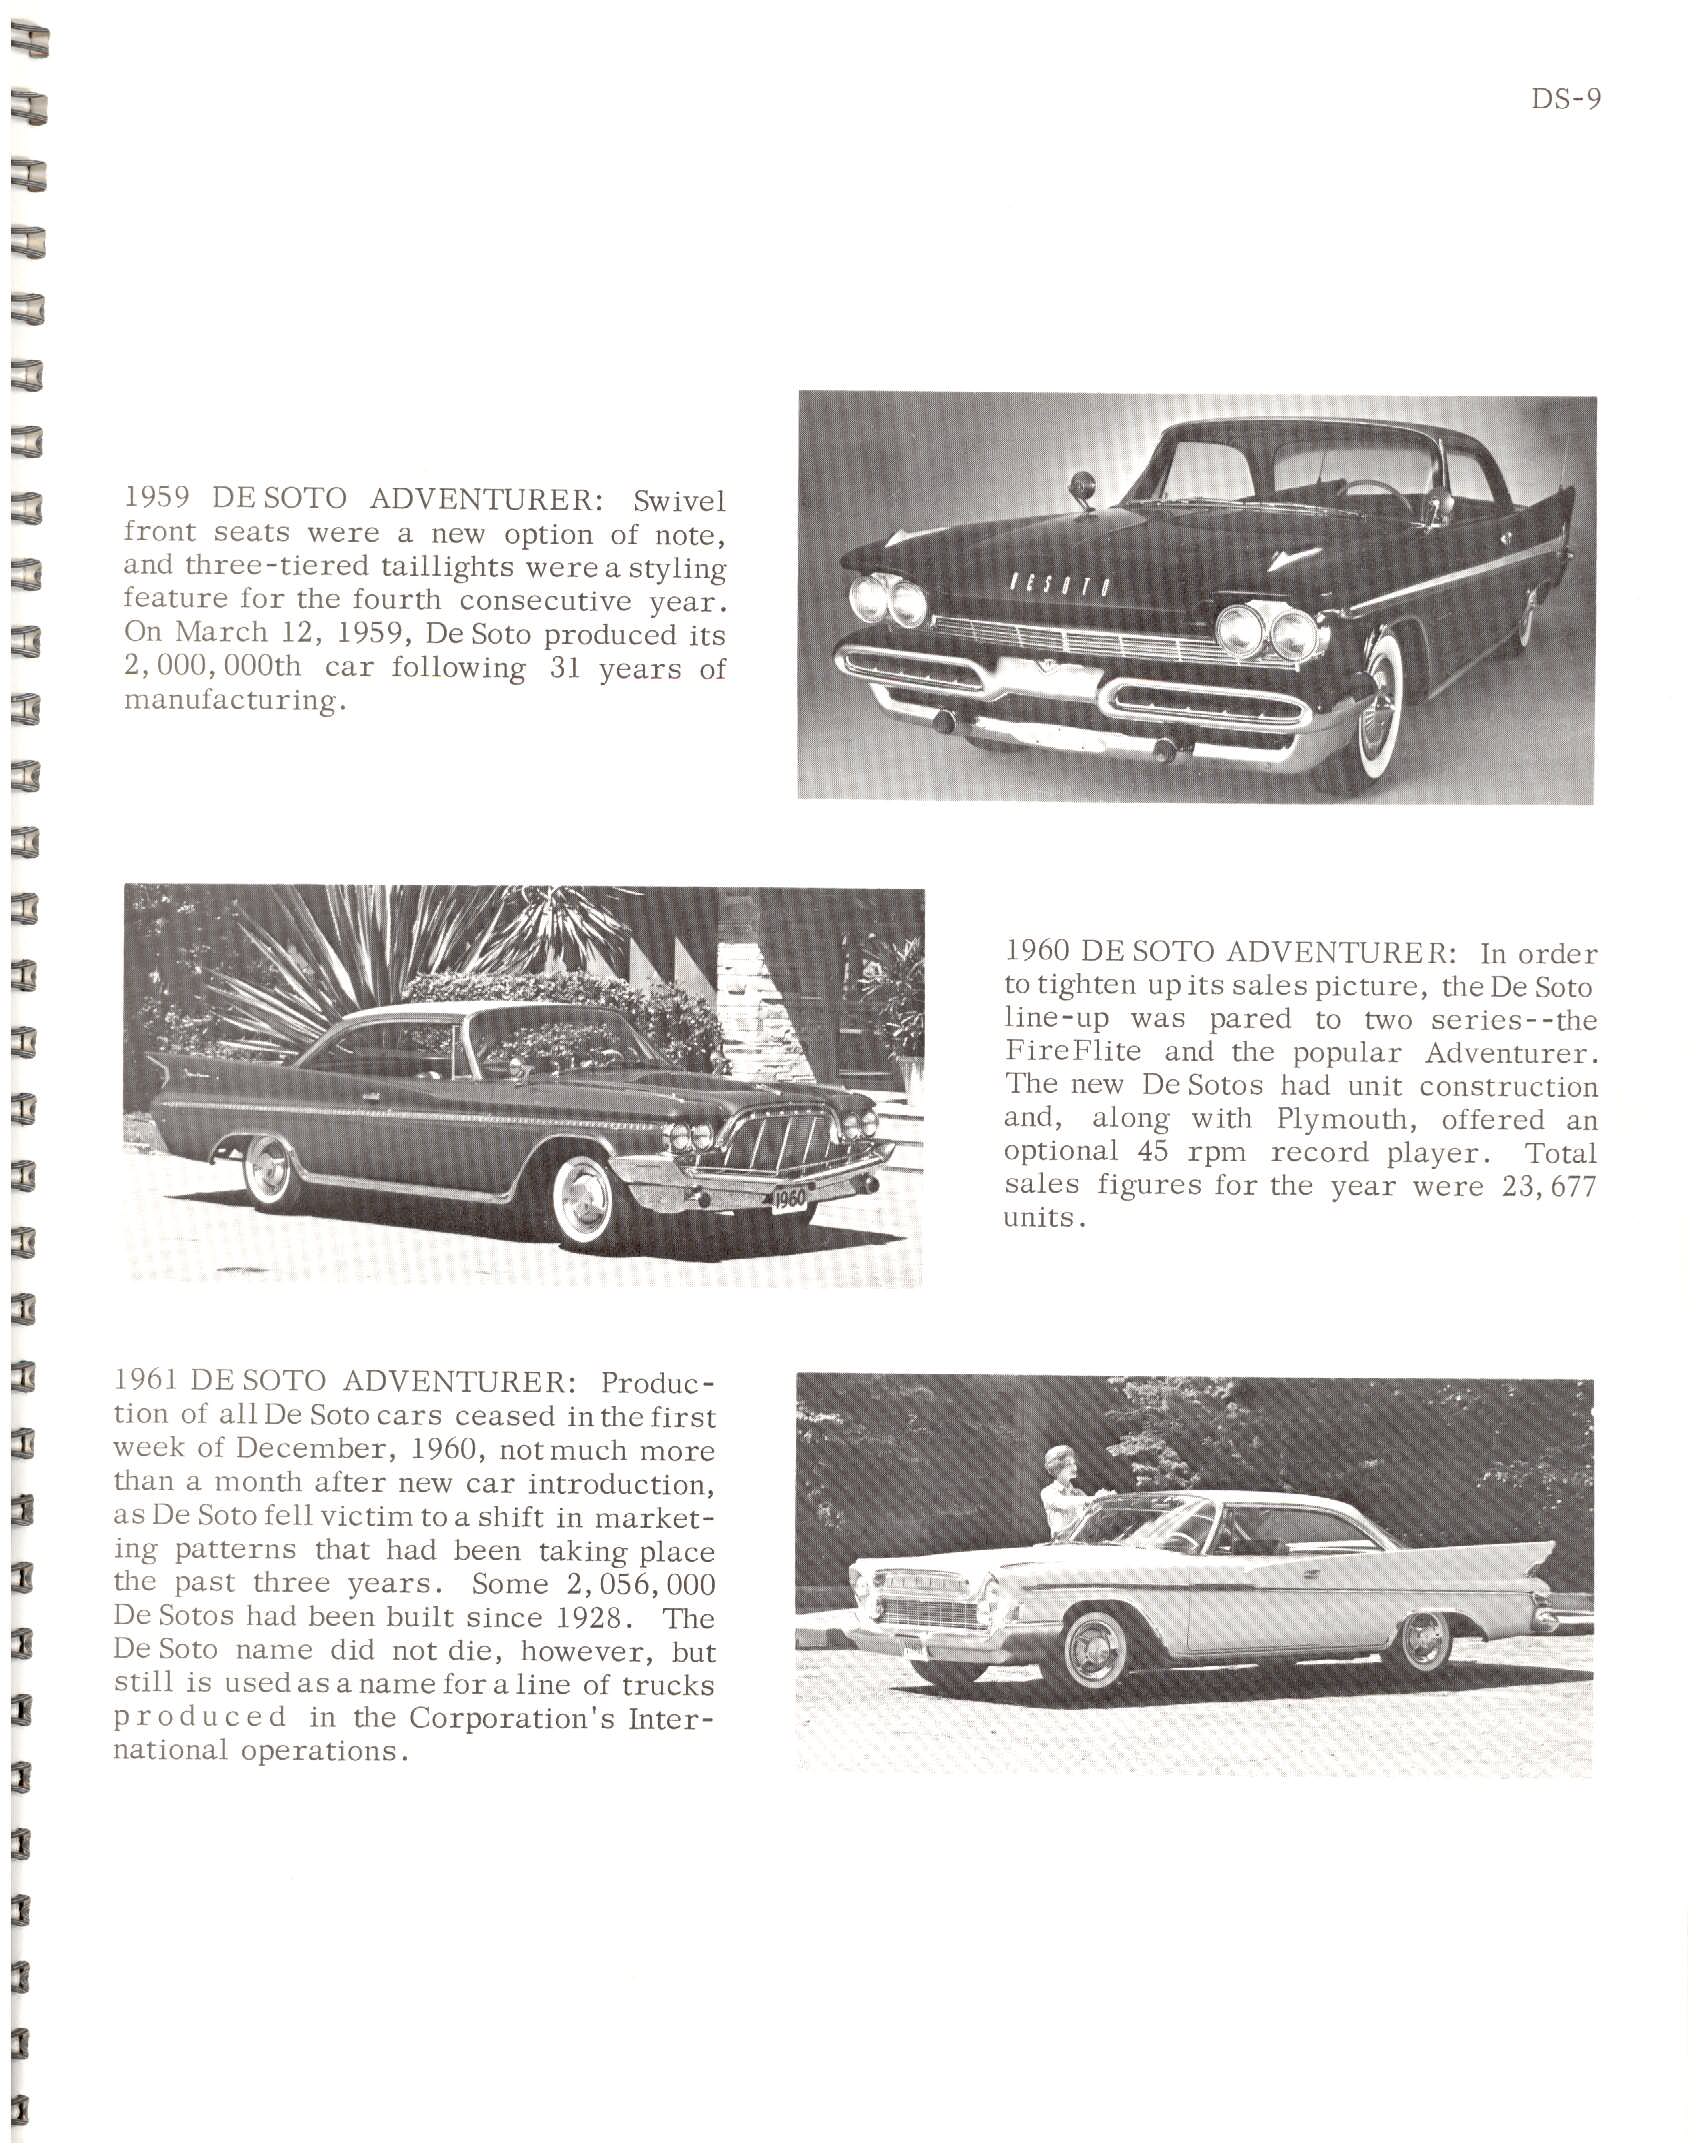 1966-History_Of_Chrysler_Cars-DS09